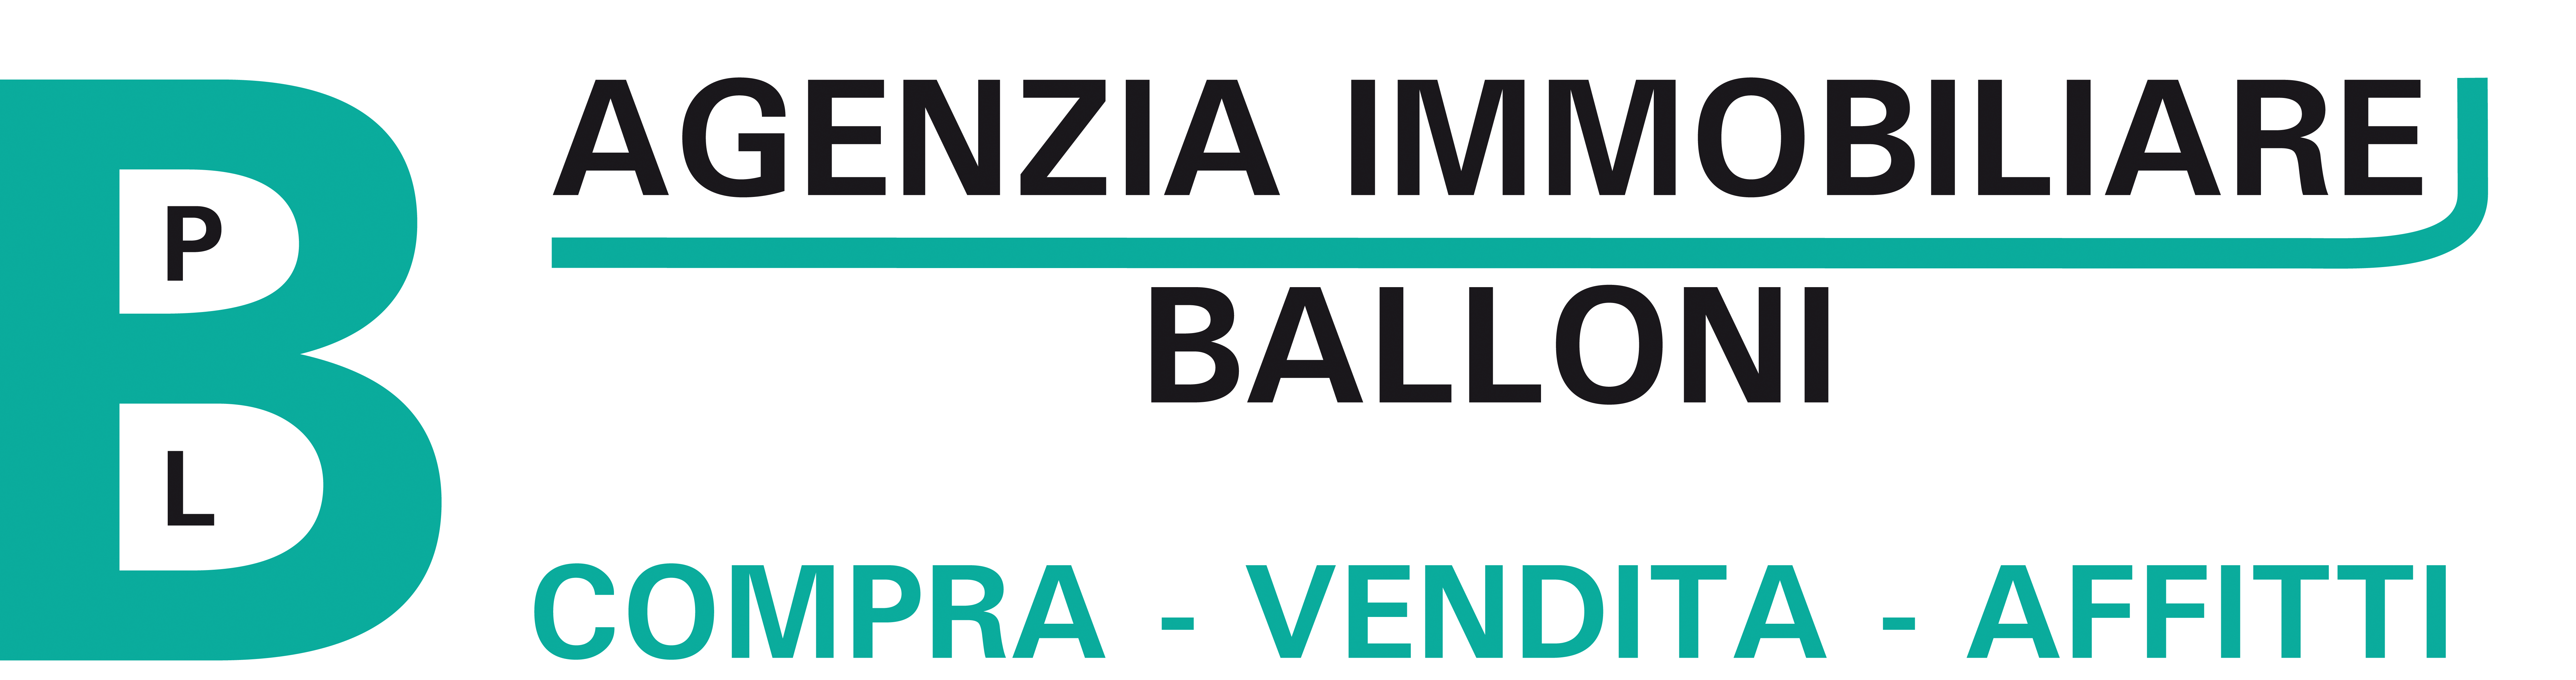 logo AGENZIA IMMOBILIARE BALLONI 